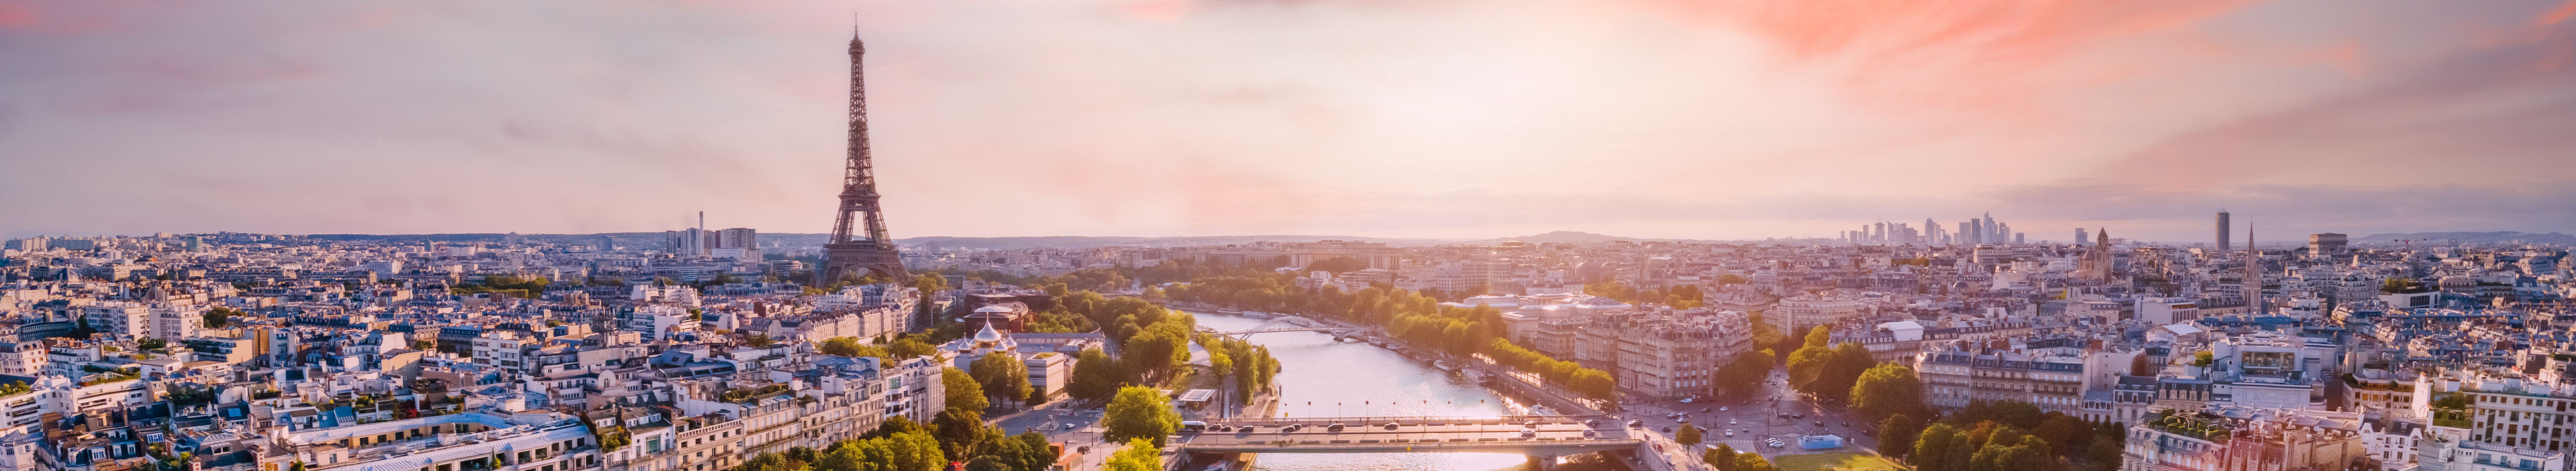 Blick auf den Eiffelturm und die Seine in Paris, Frankreich.